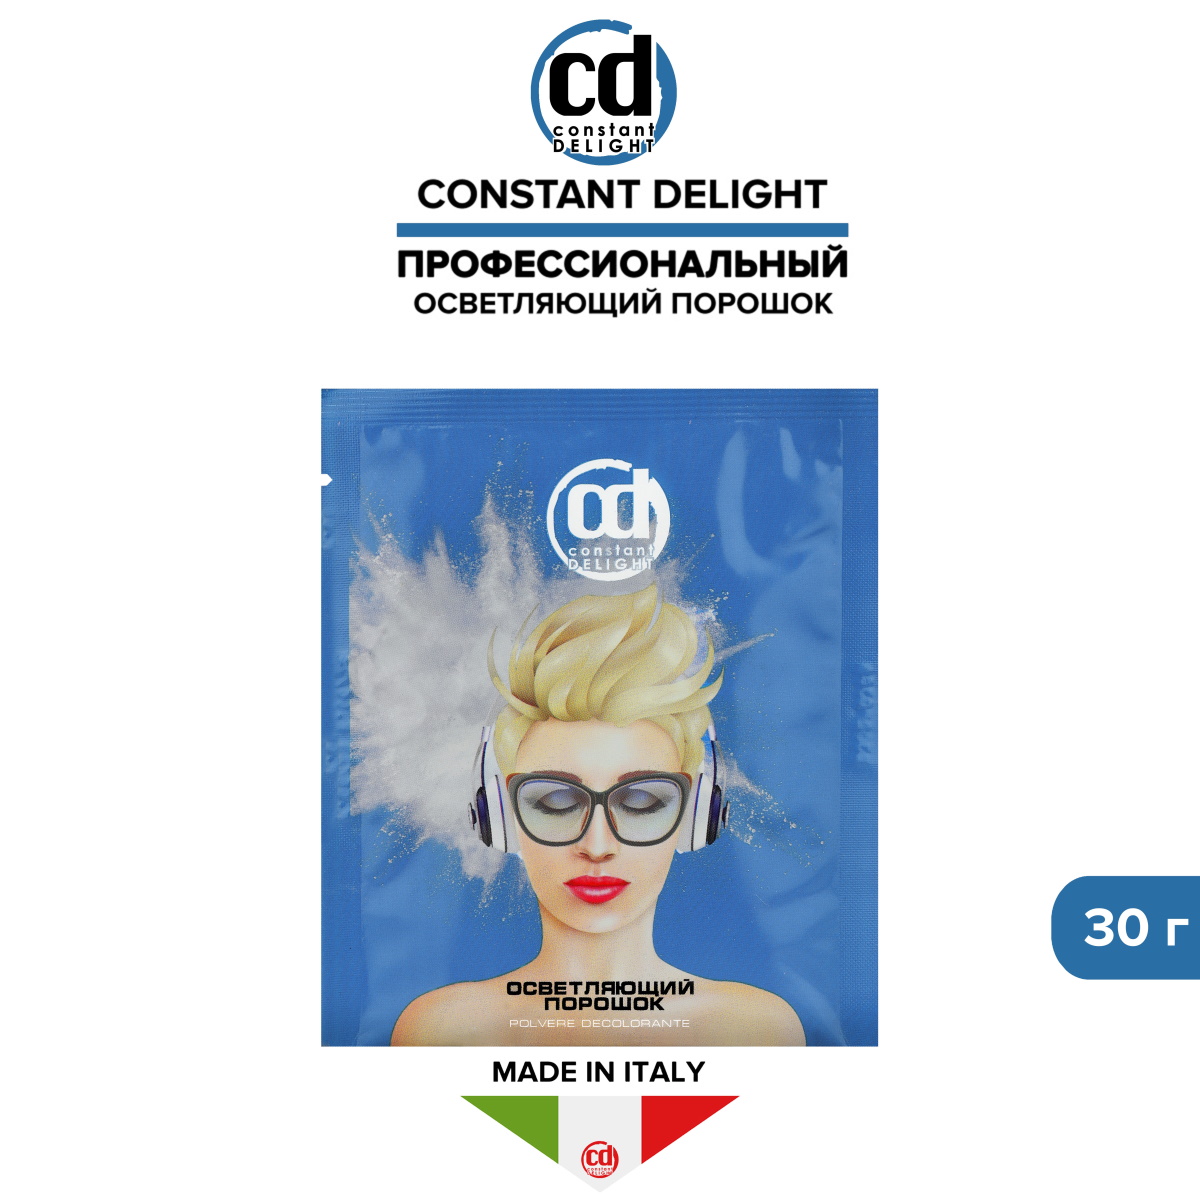 Порошок для осветления волос Constant Delight 30 г